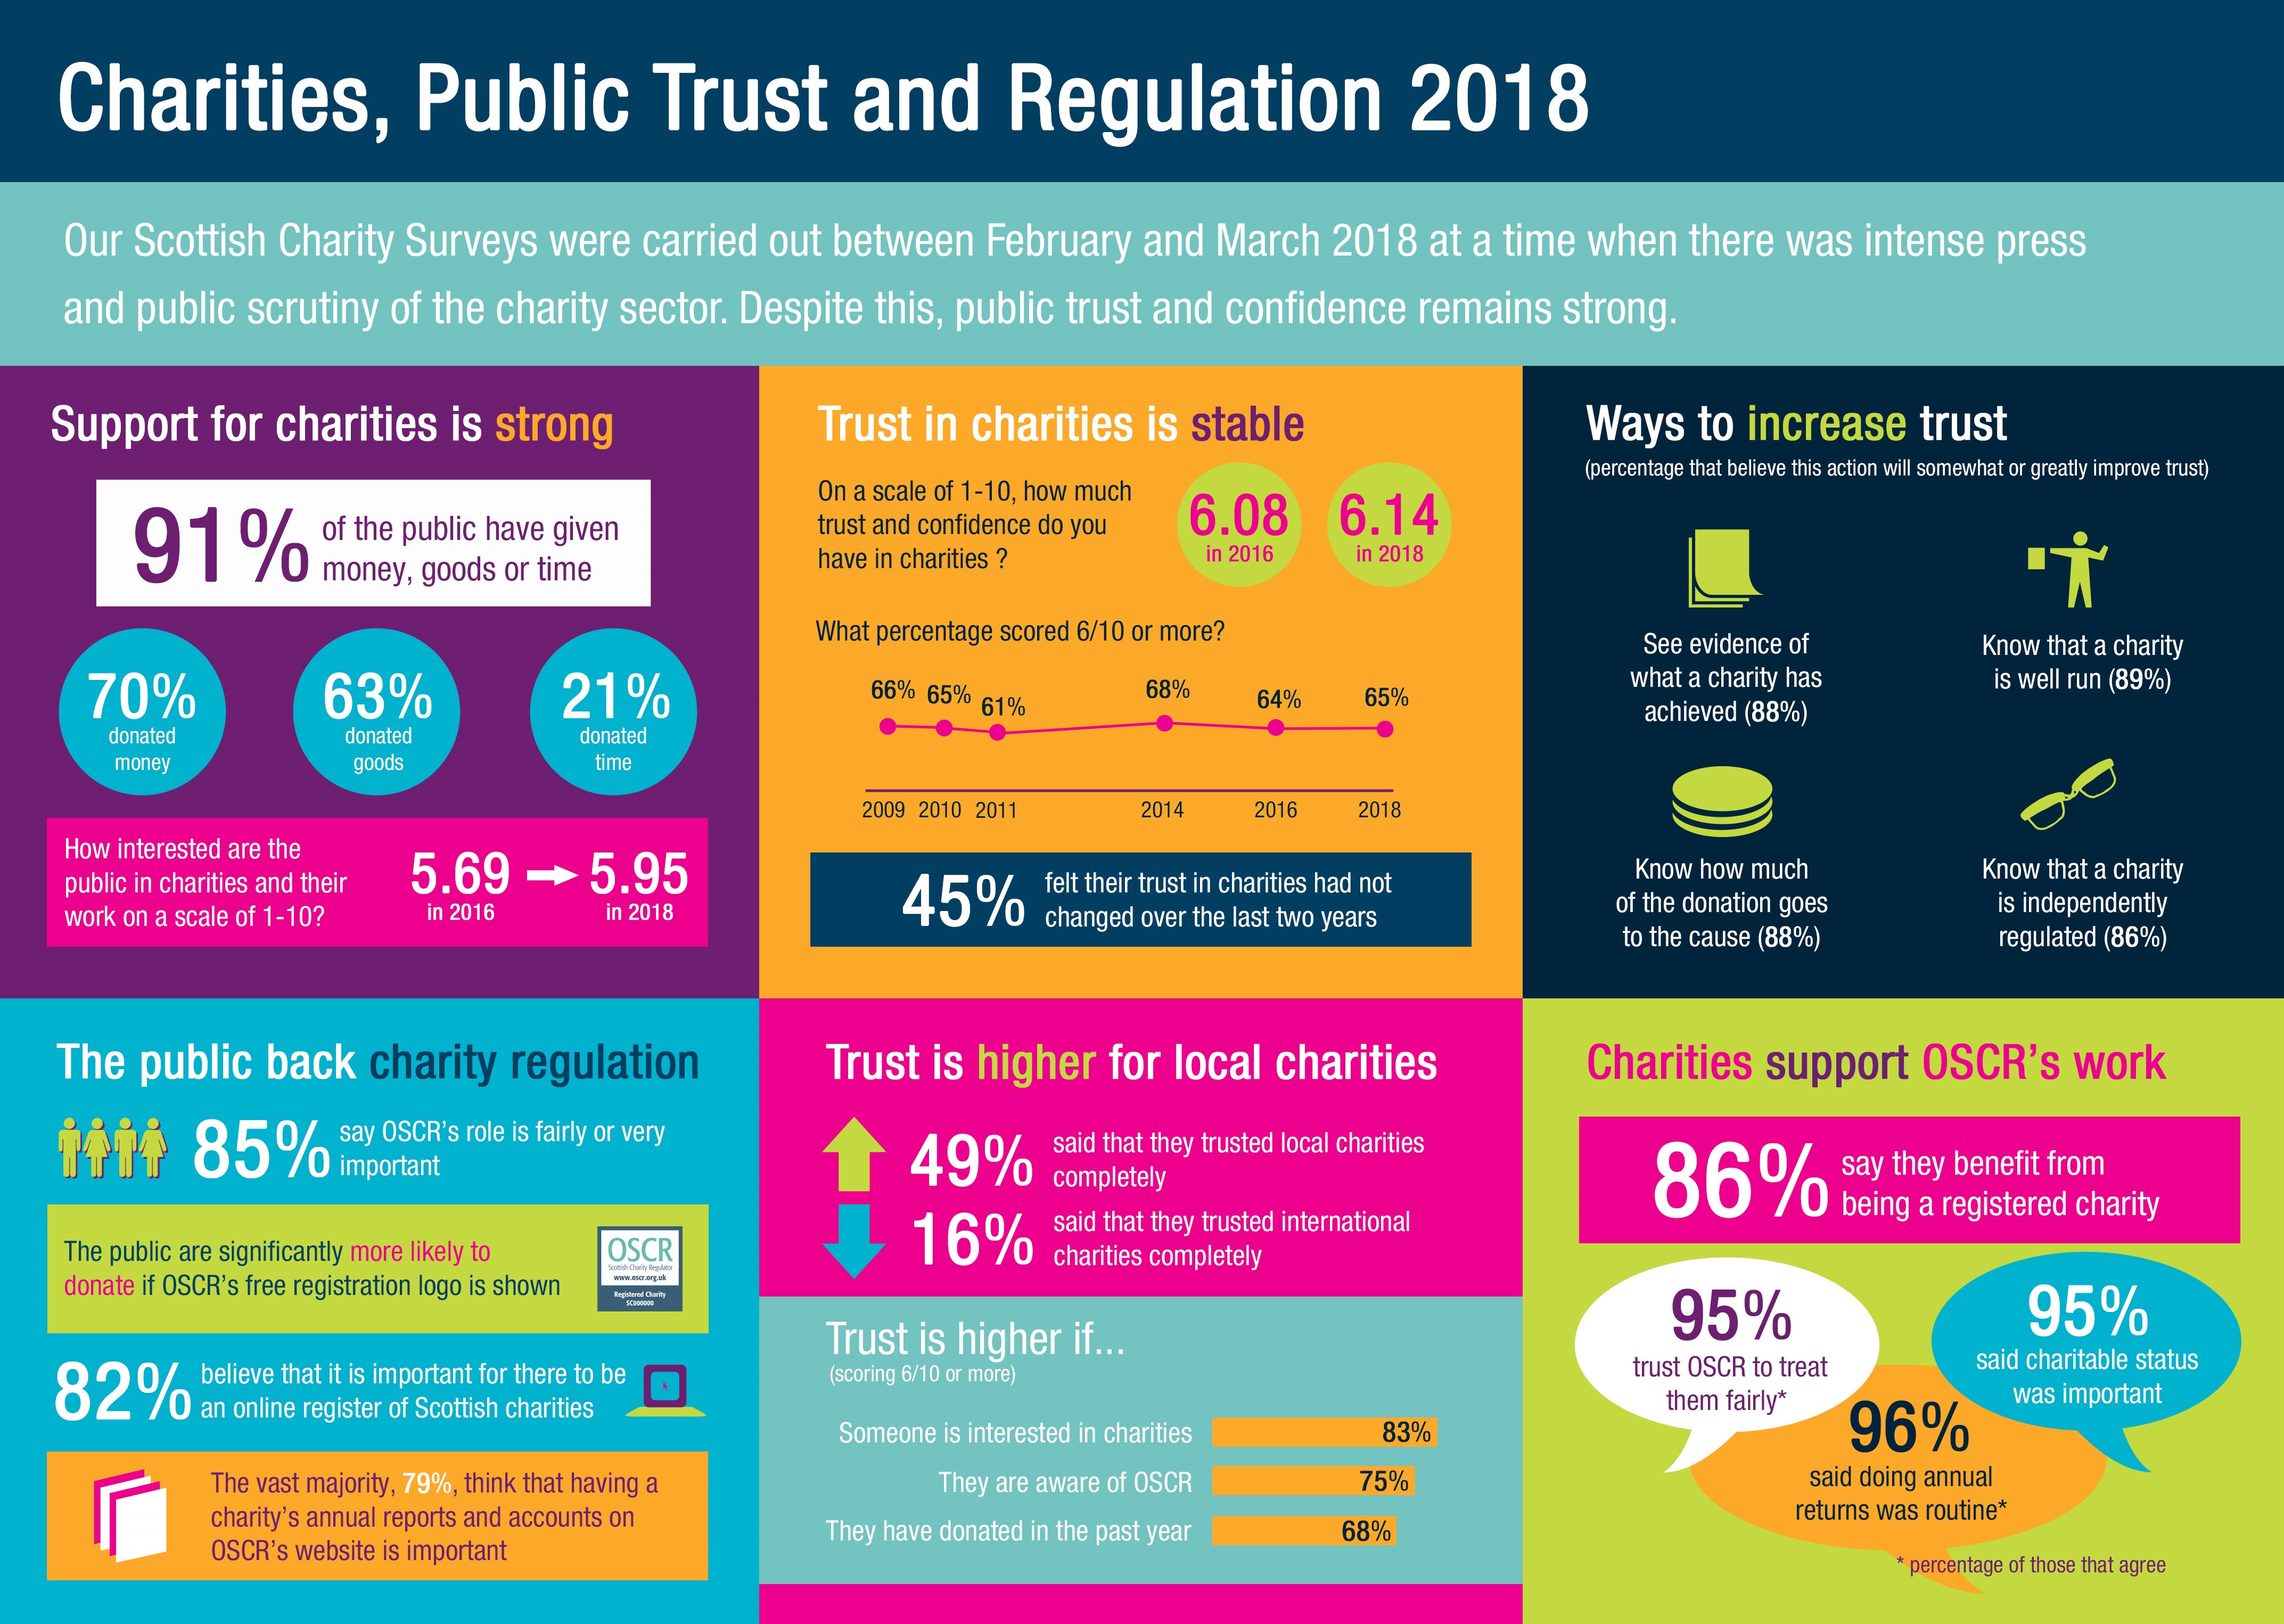 Our survey says… public trust remains stable.